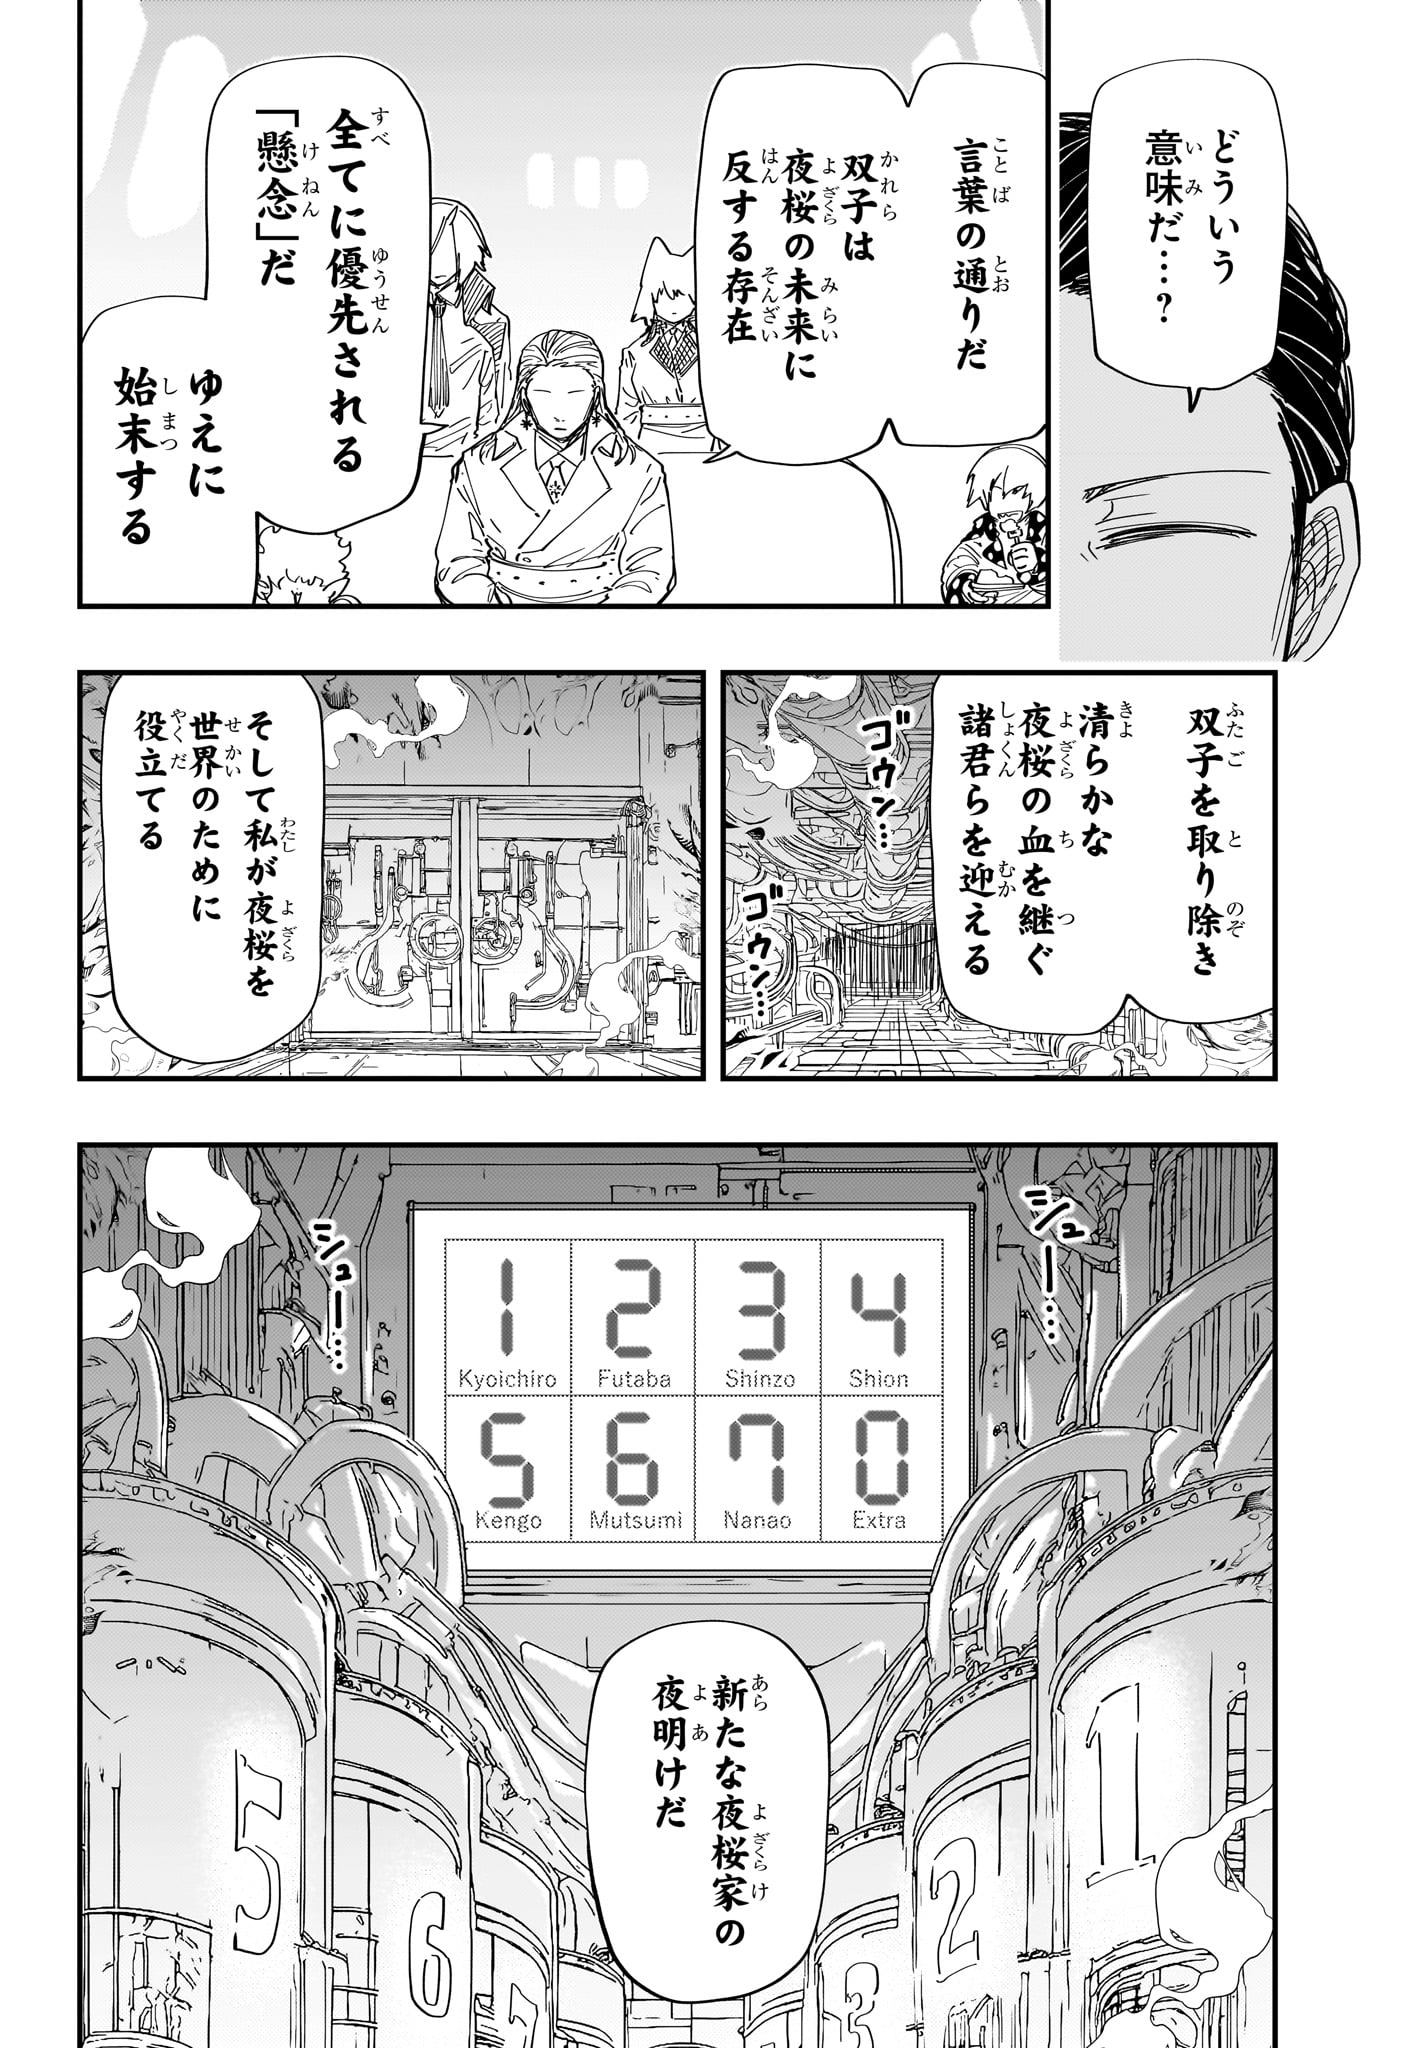 Yozakura-san Chi no Daisakusen - Chapter 223 - Page 6